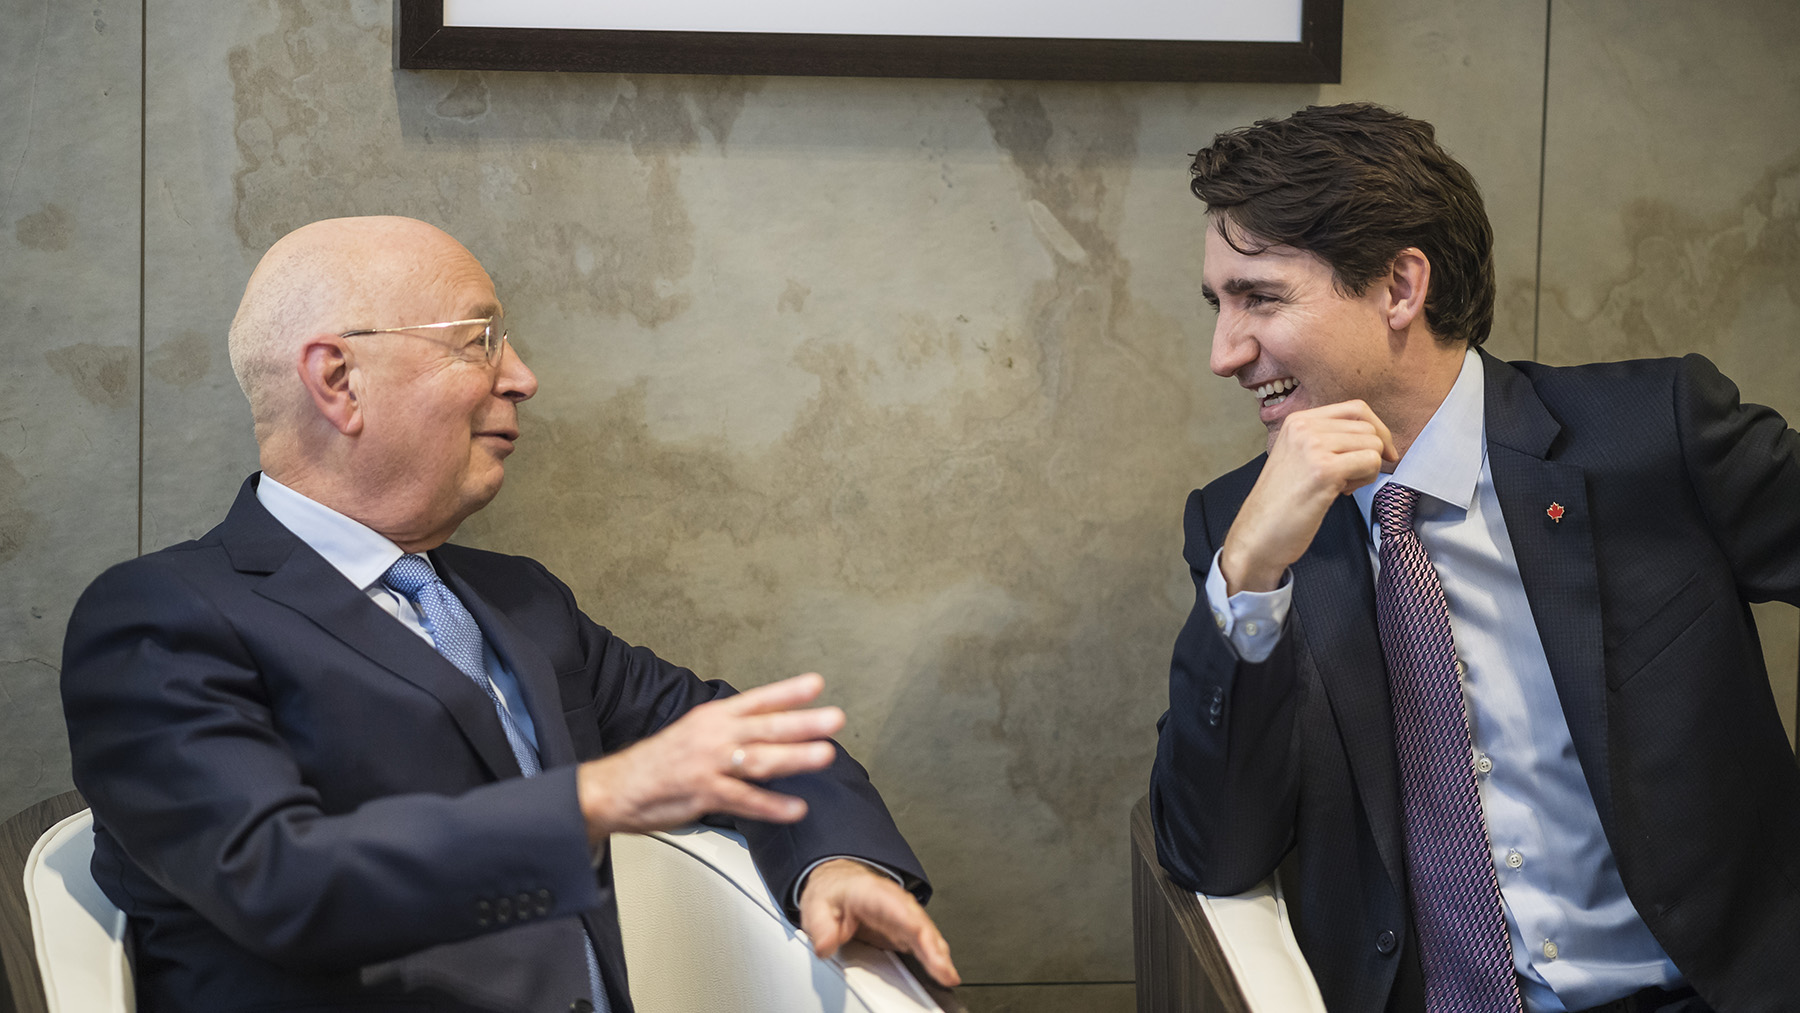 Prof. Klaus Schwab im Gespräch mit dem Premierminister Kanadas, Justin Trudeau